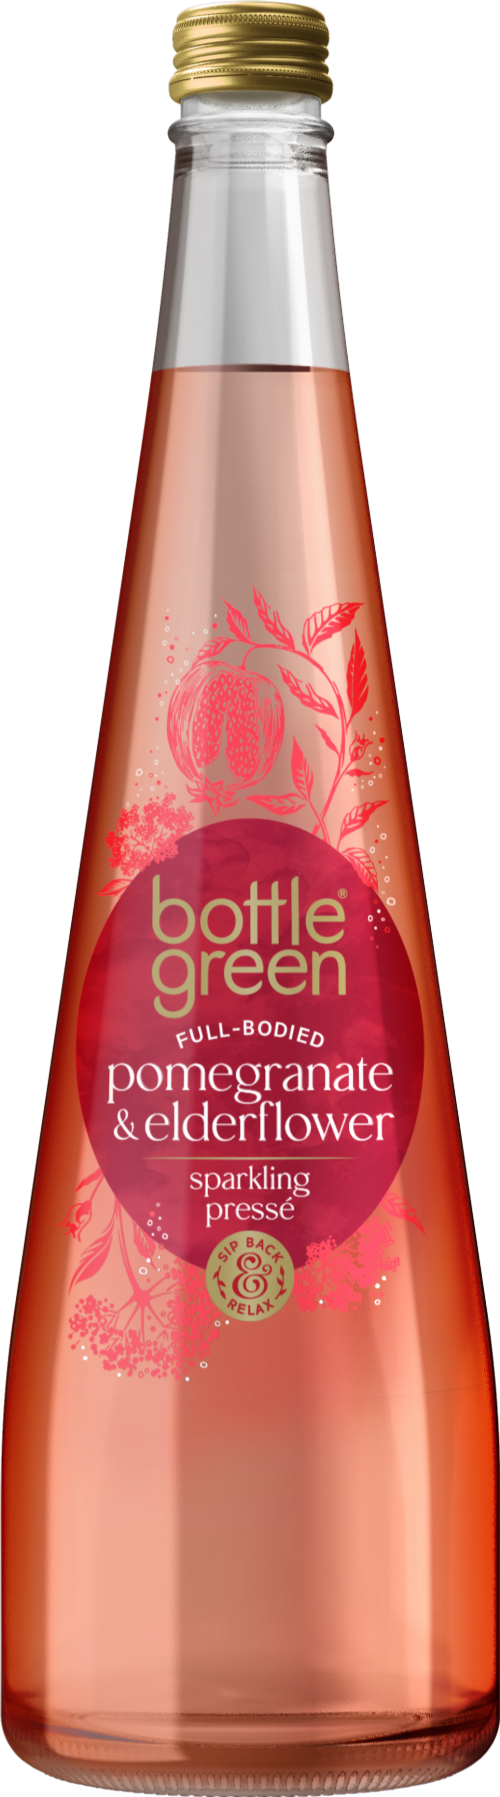 BOTTLE GREEN Pomegranate & Elderflower Presse 750ml